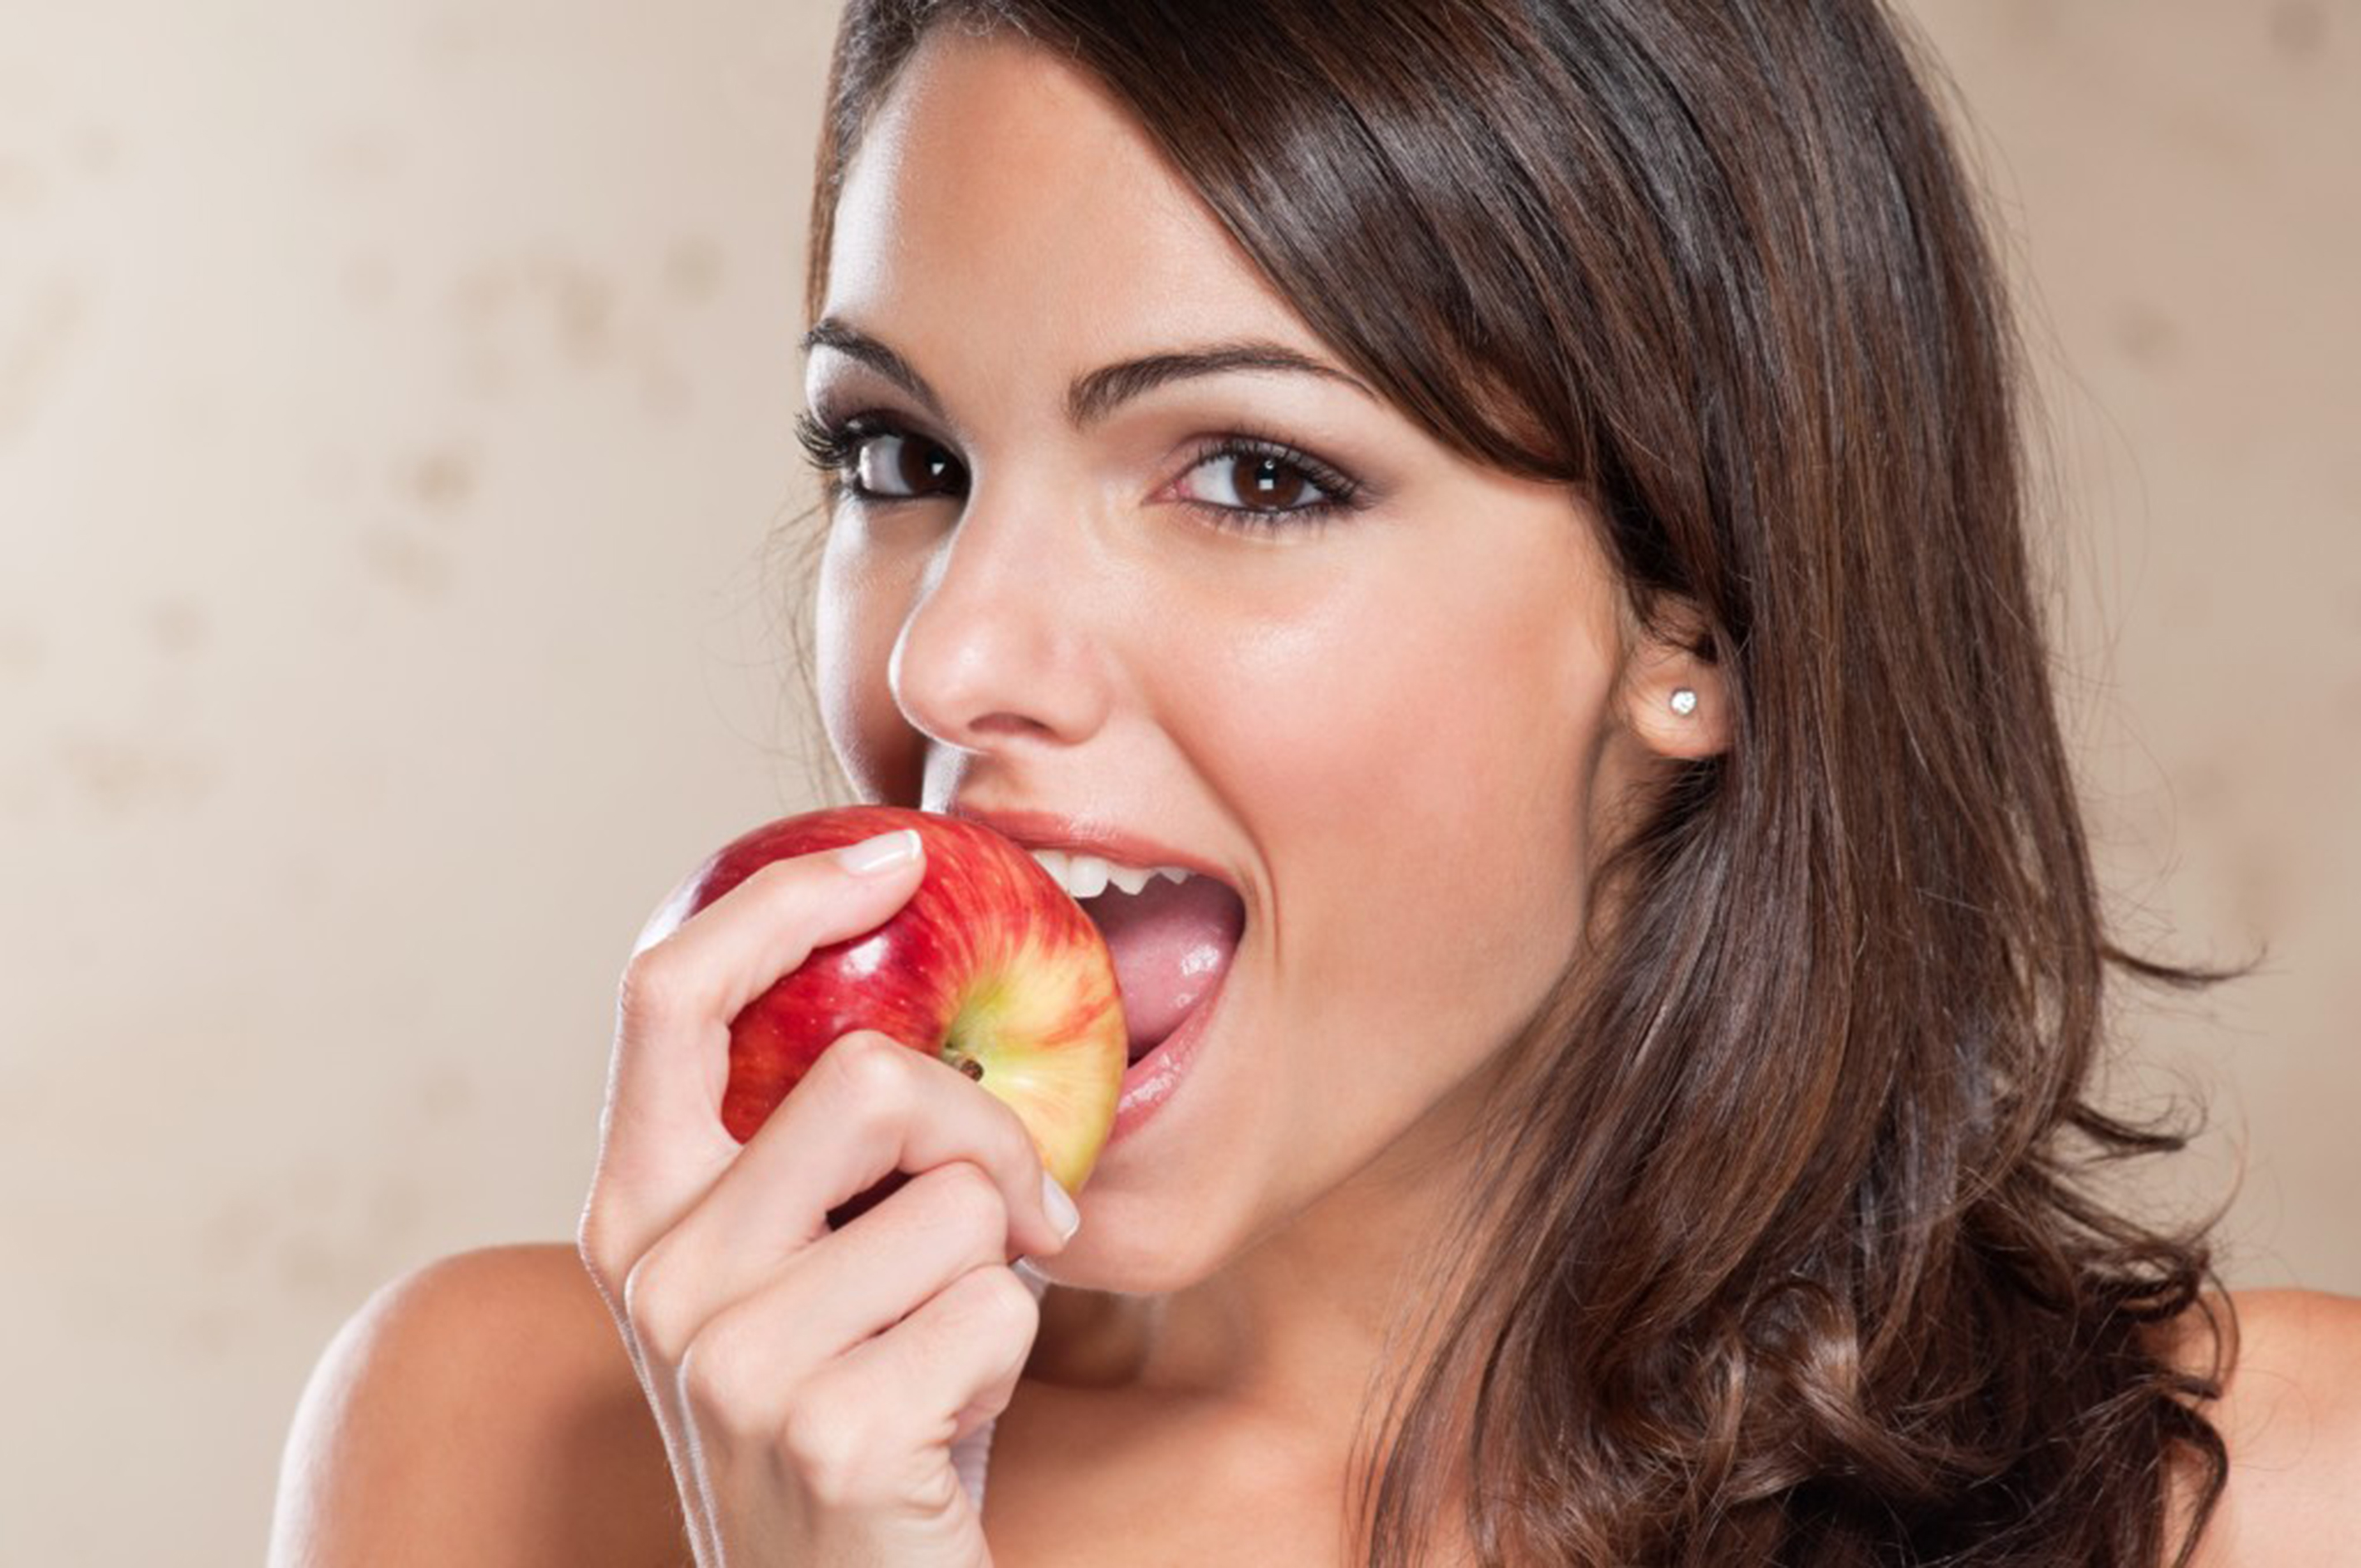 La salud y crecimiento del cabello, reforzados con la manzana